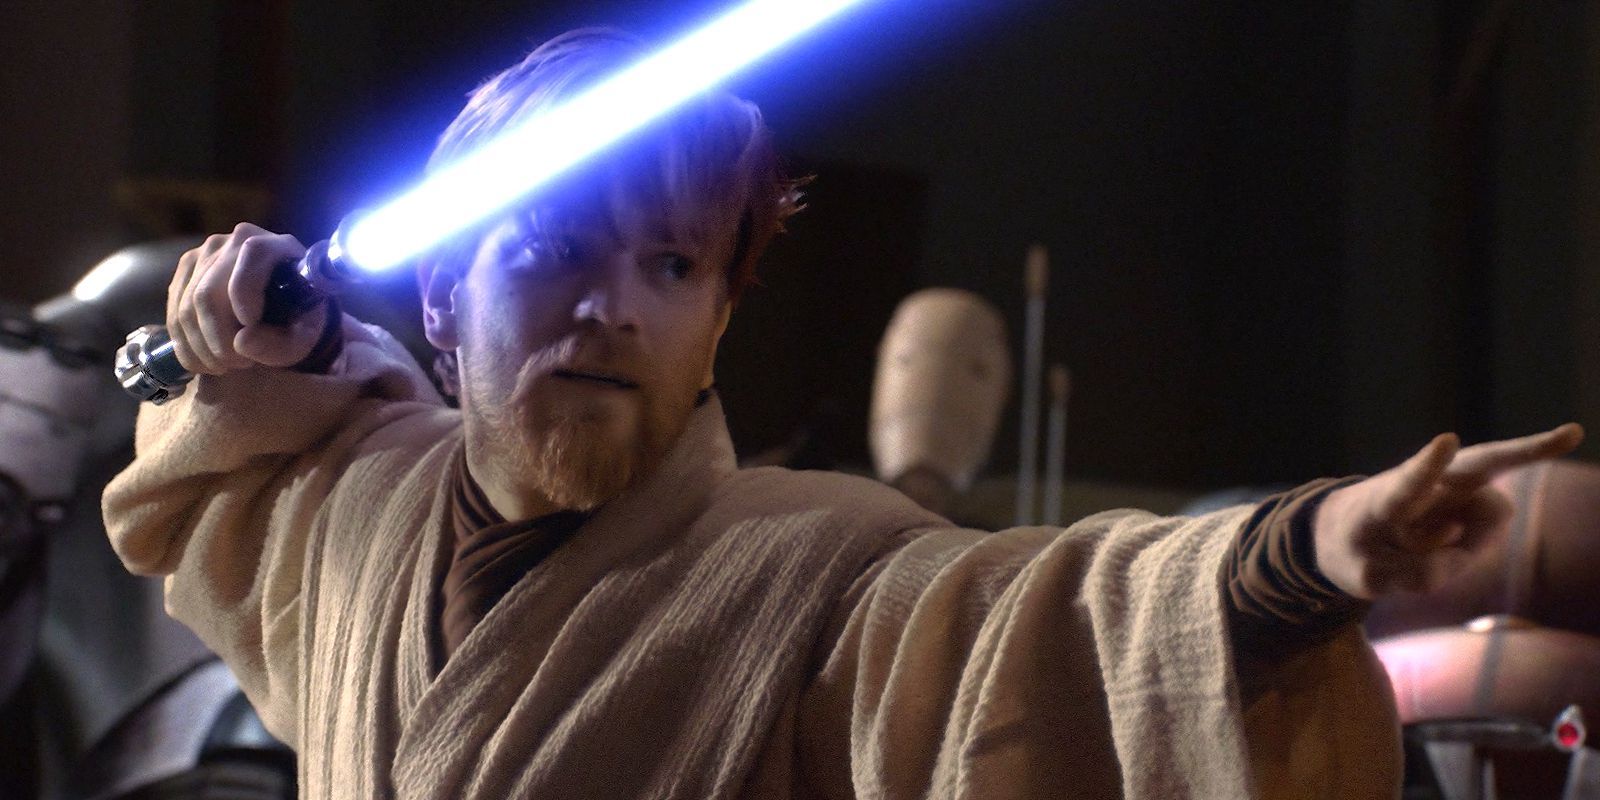 Obi-Wan using the force